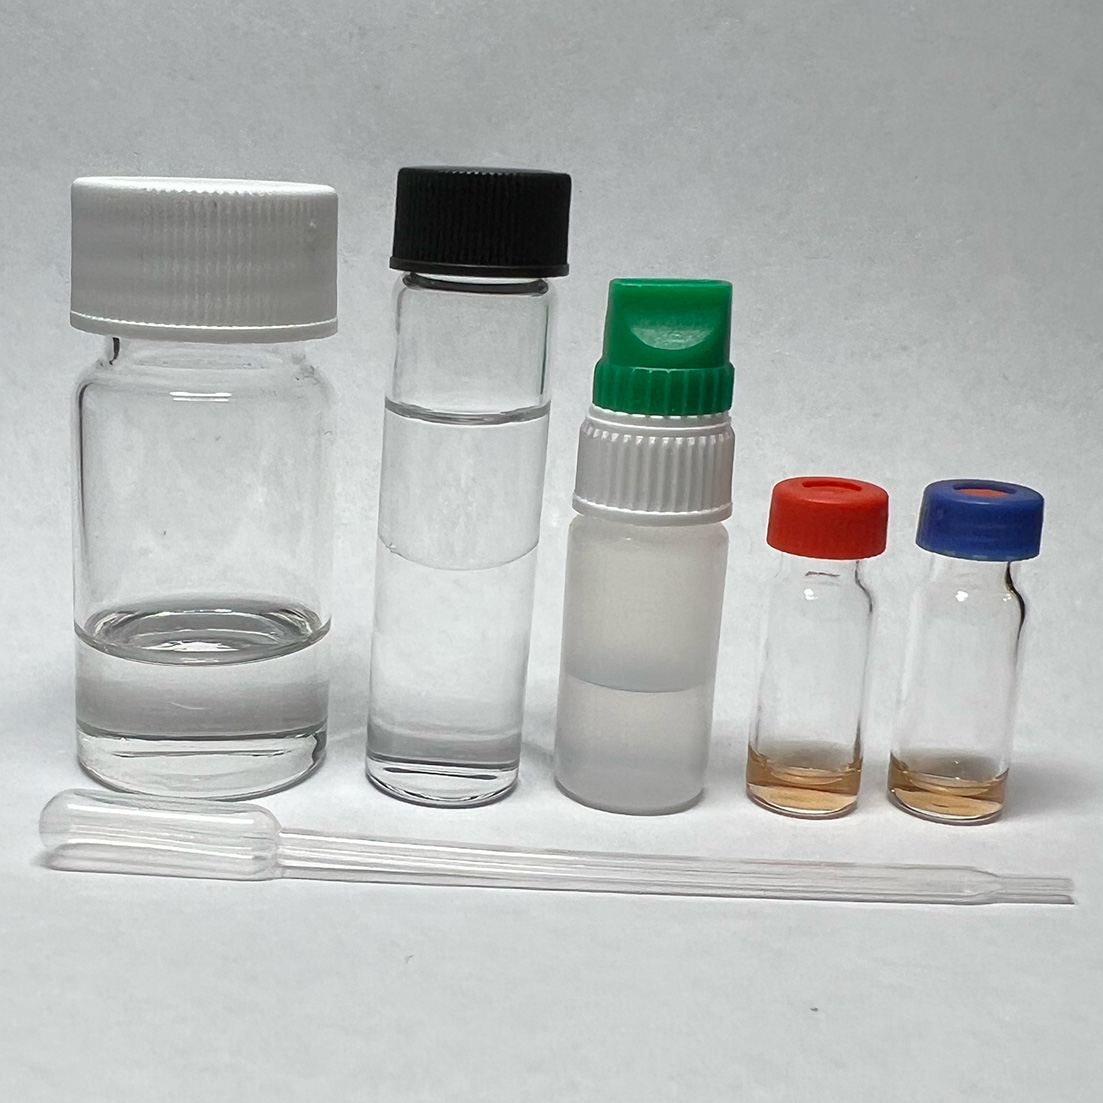 MDMA-test-kit-materials